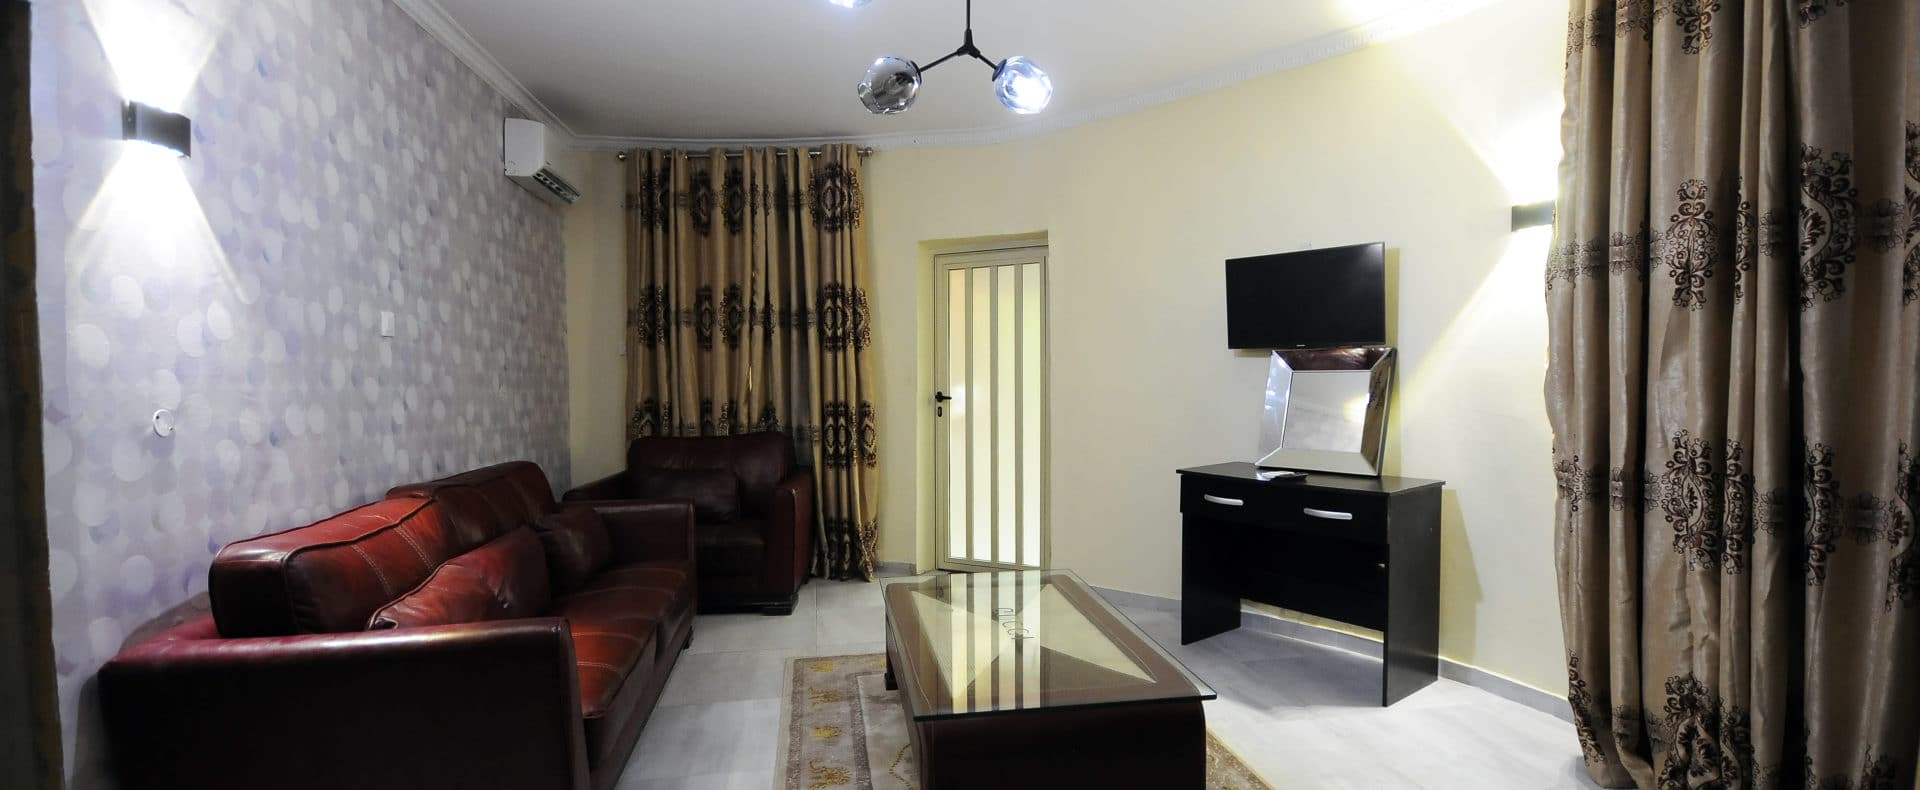 Hotel Resort Exquisite Suite In Lagos Nigeria